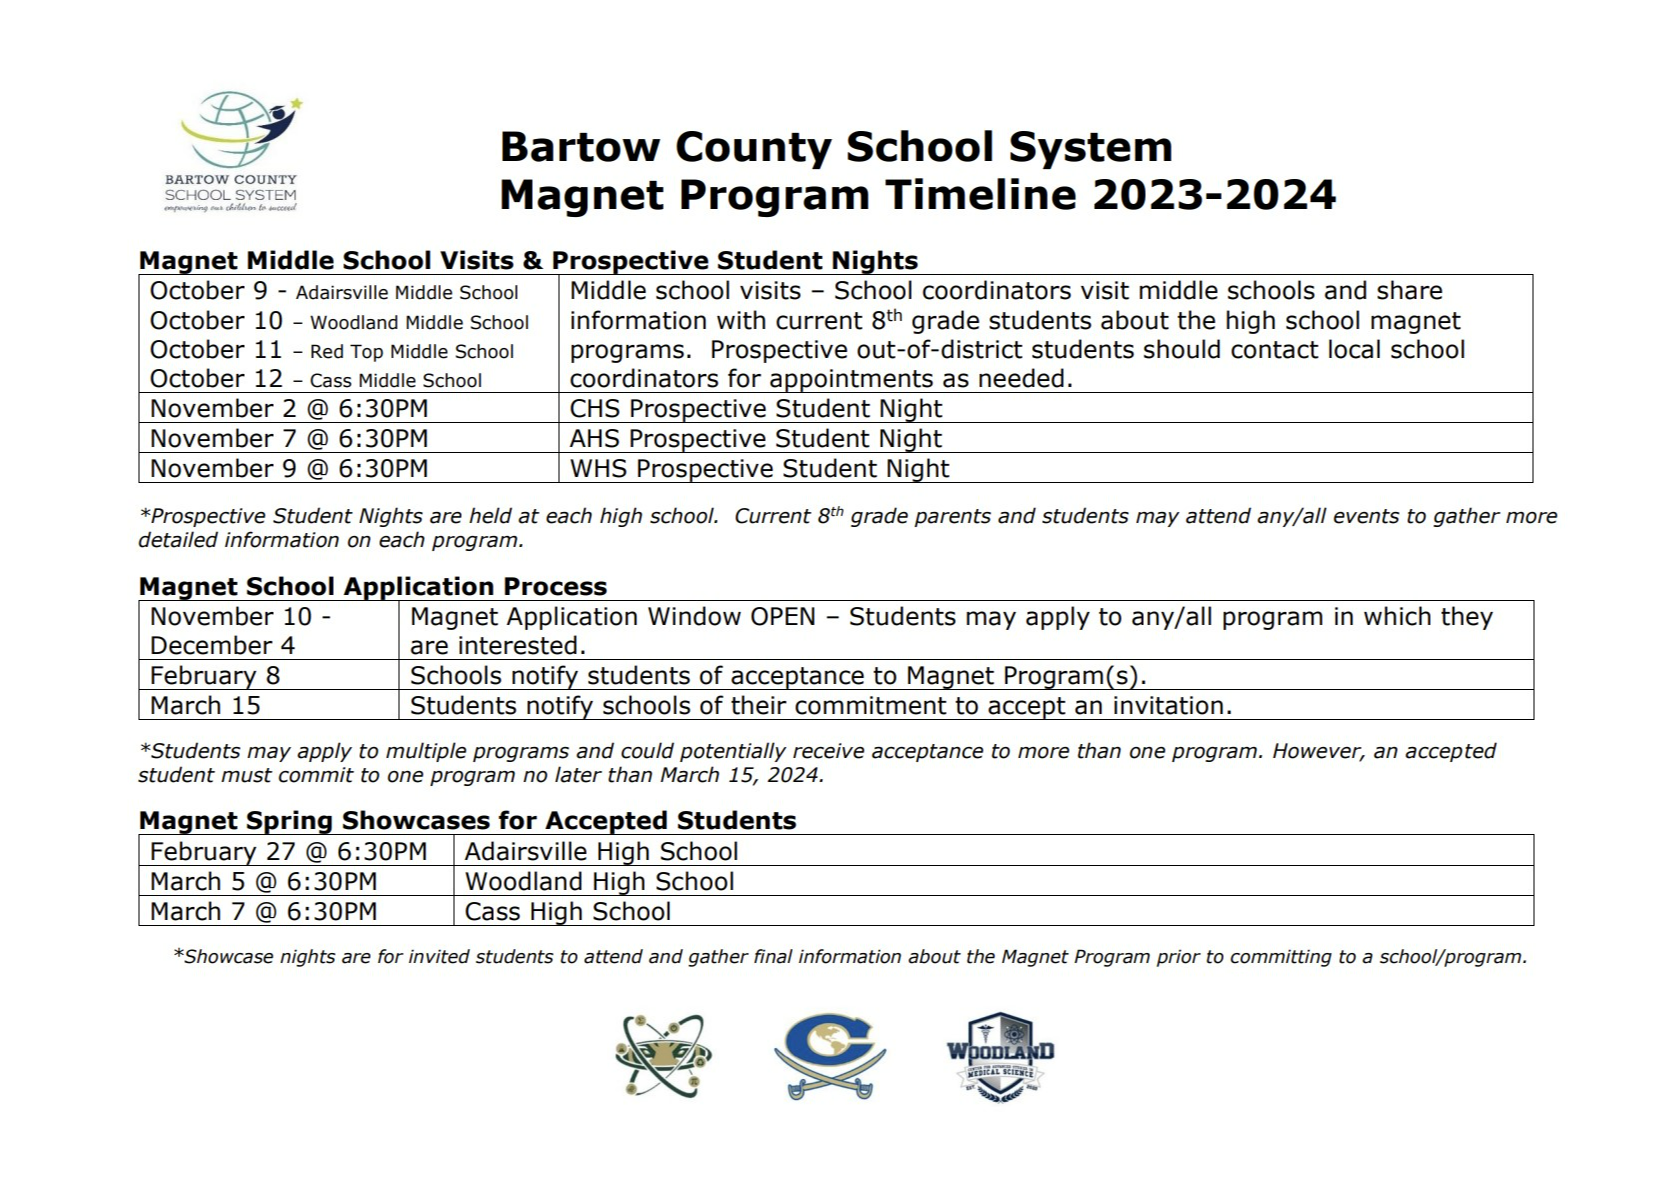 Magnet program timeline